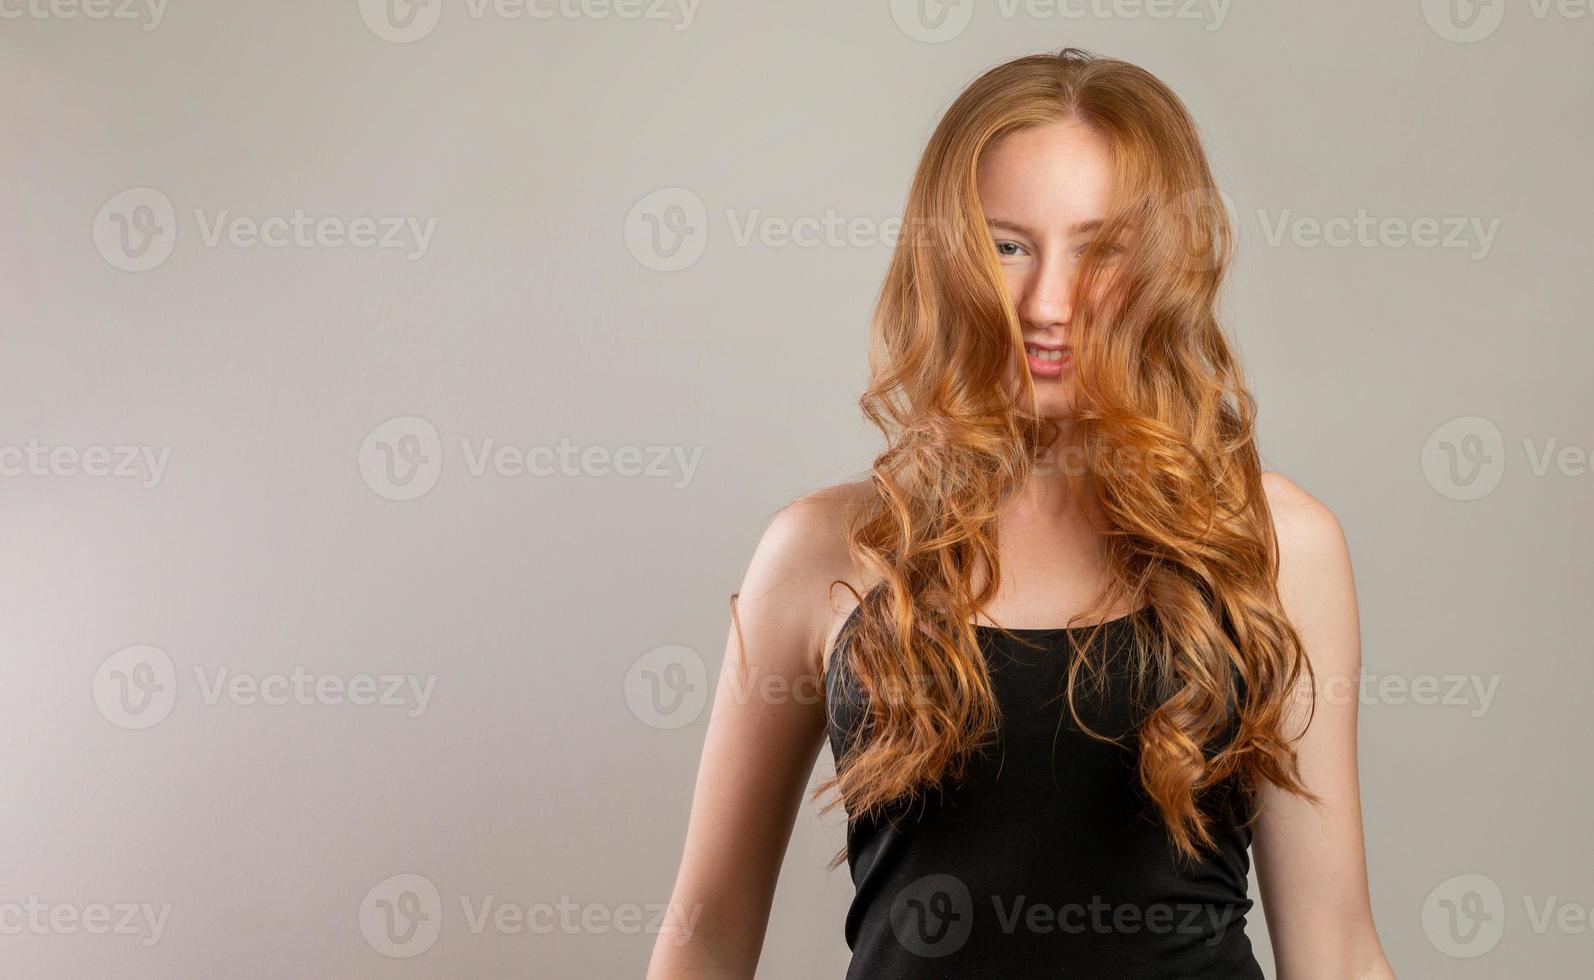 Ritratto di bella ragazza rossa allegra sorridente ridendo guardando la fotocamera su sfondo bianco. foto